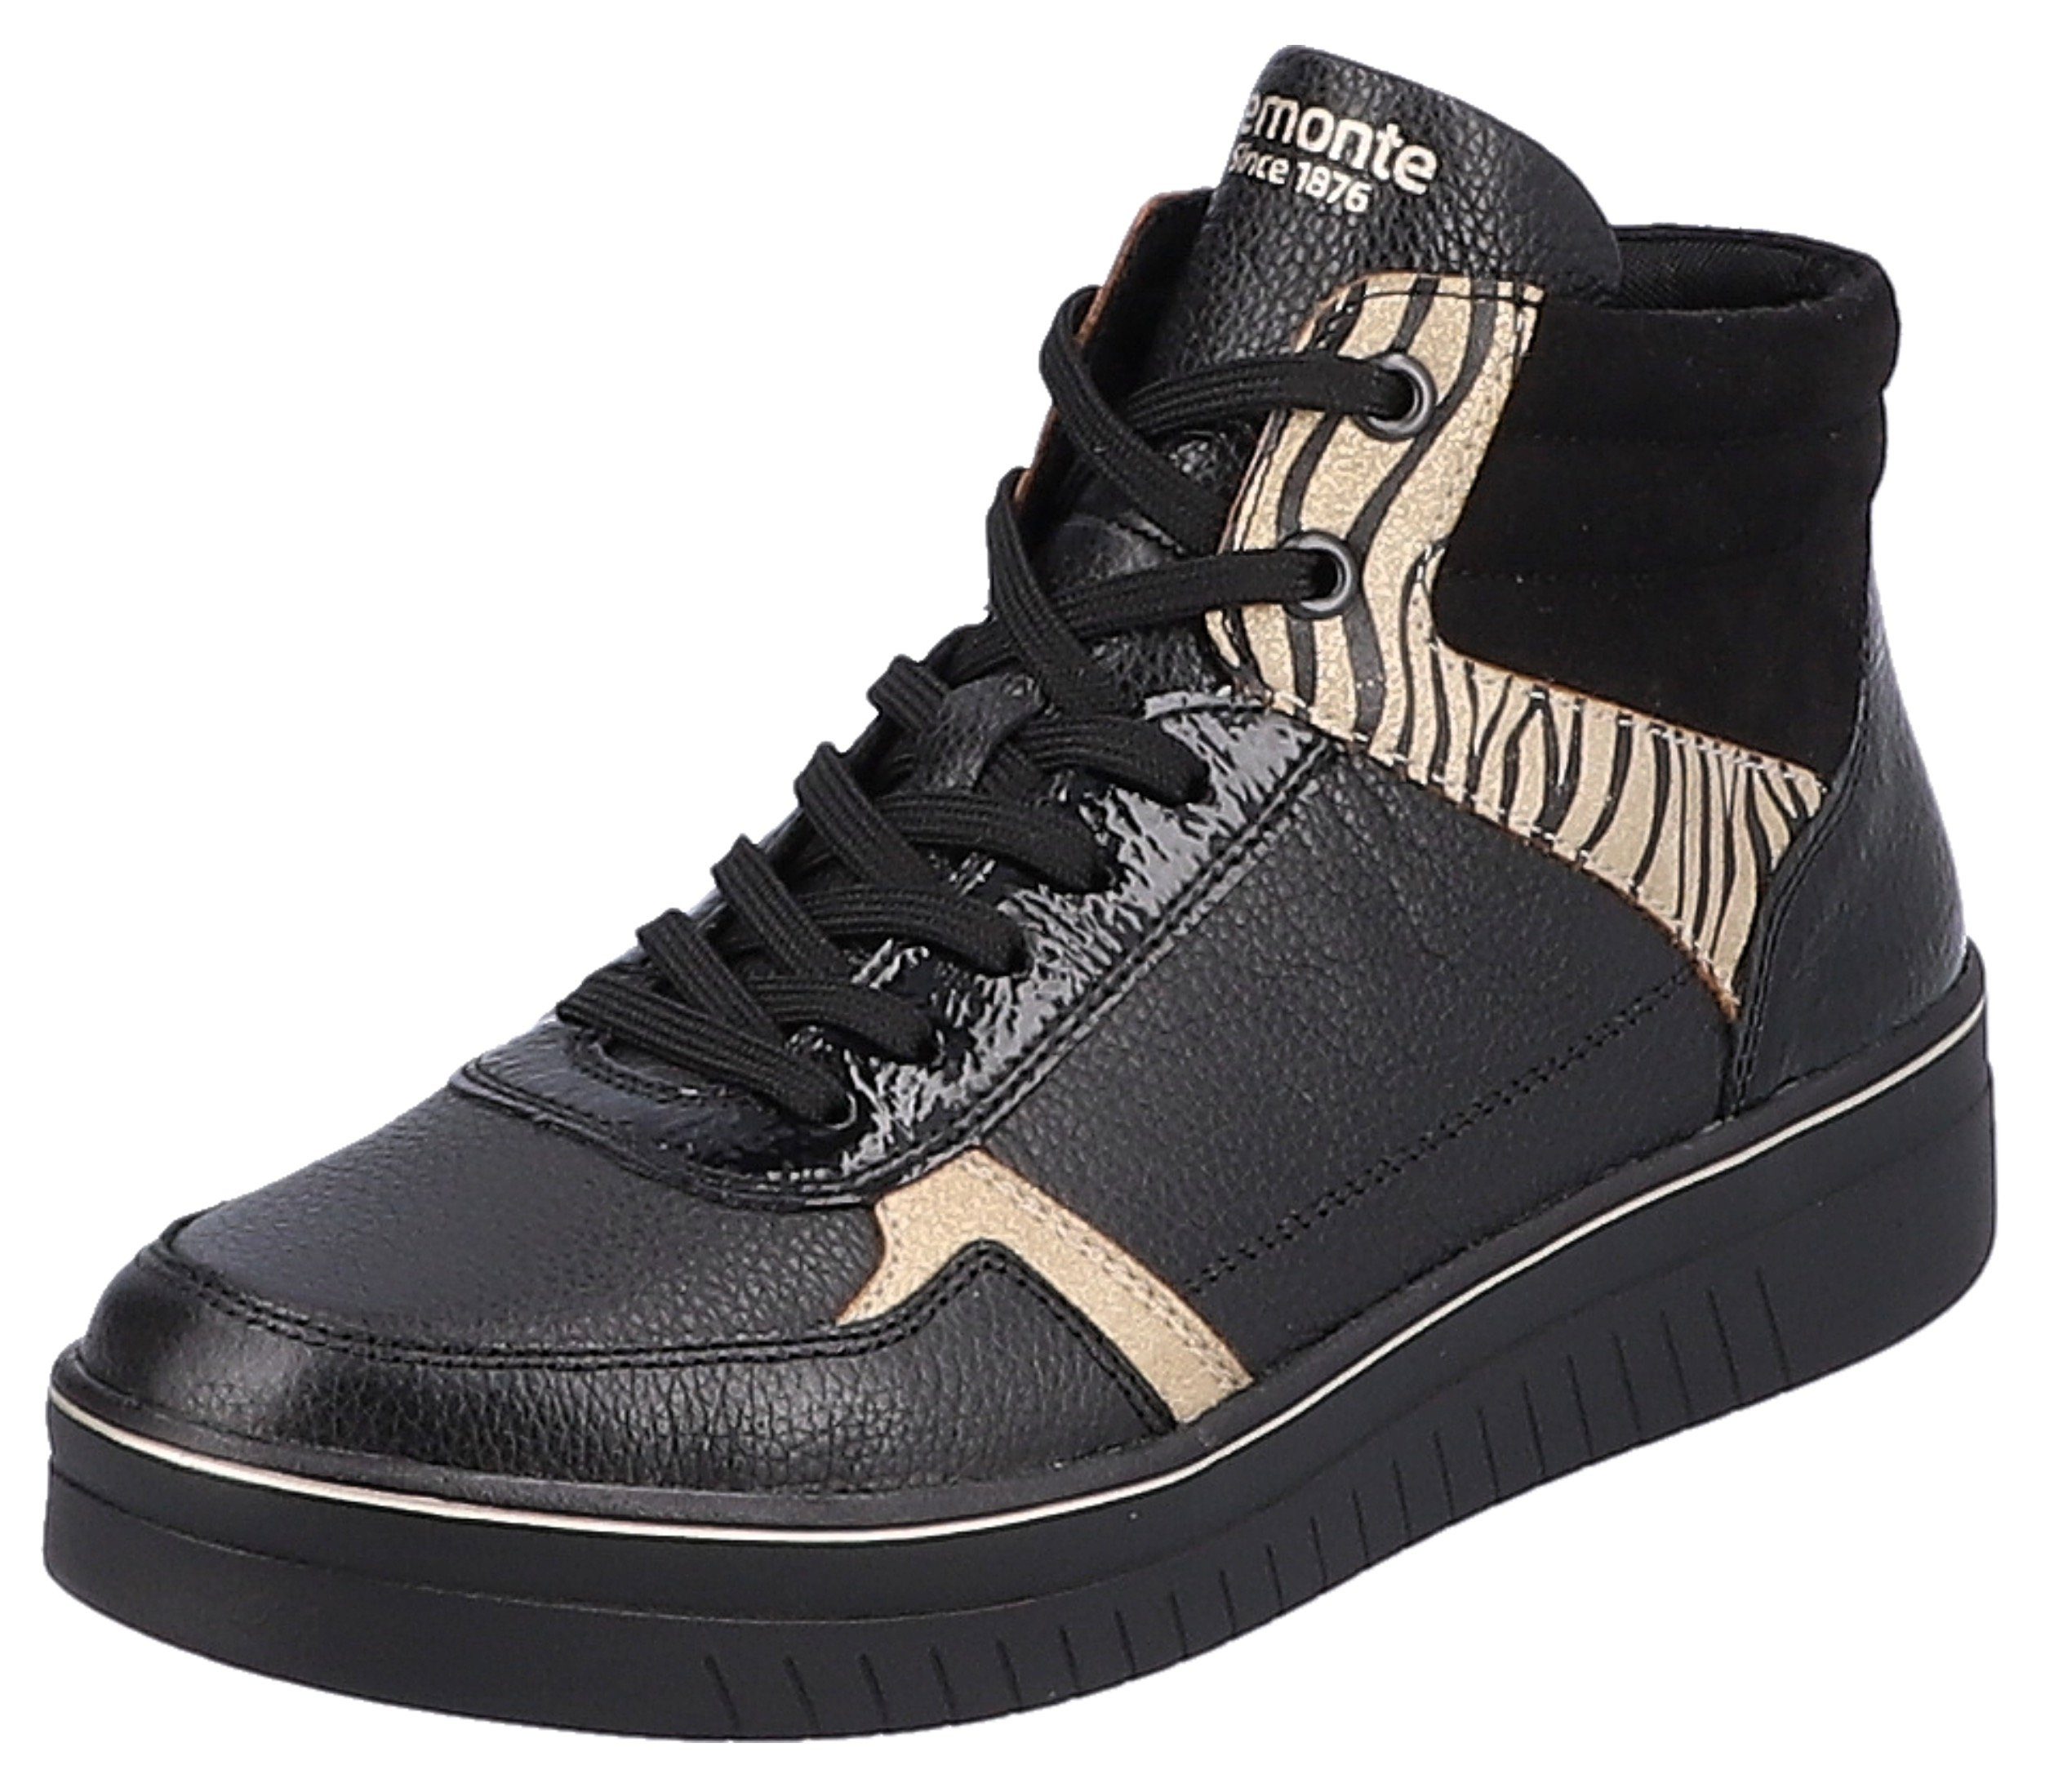 Sneaker kombiniert Ausstattung Tragekomfort schwarz Soft-Foam hohem durch mit Remonte